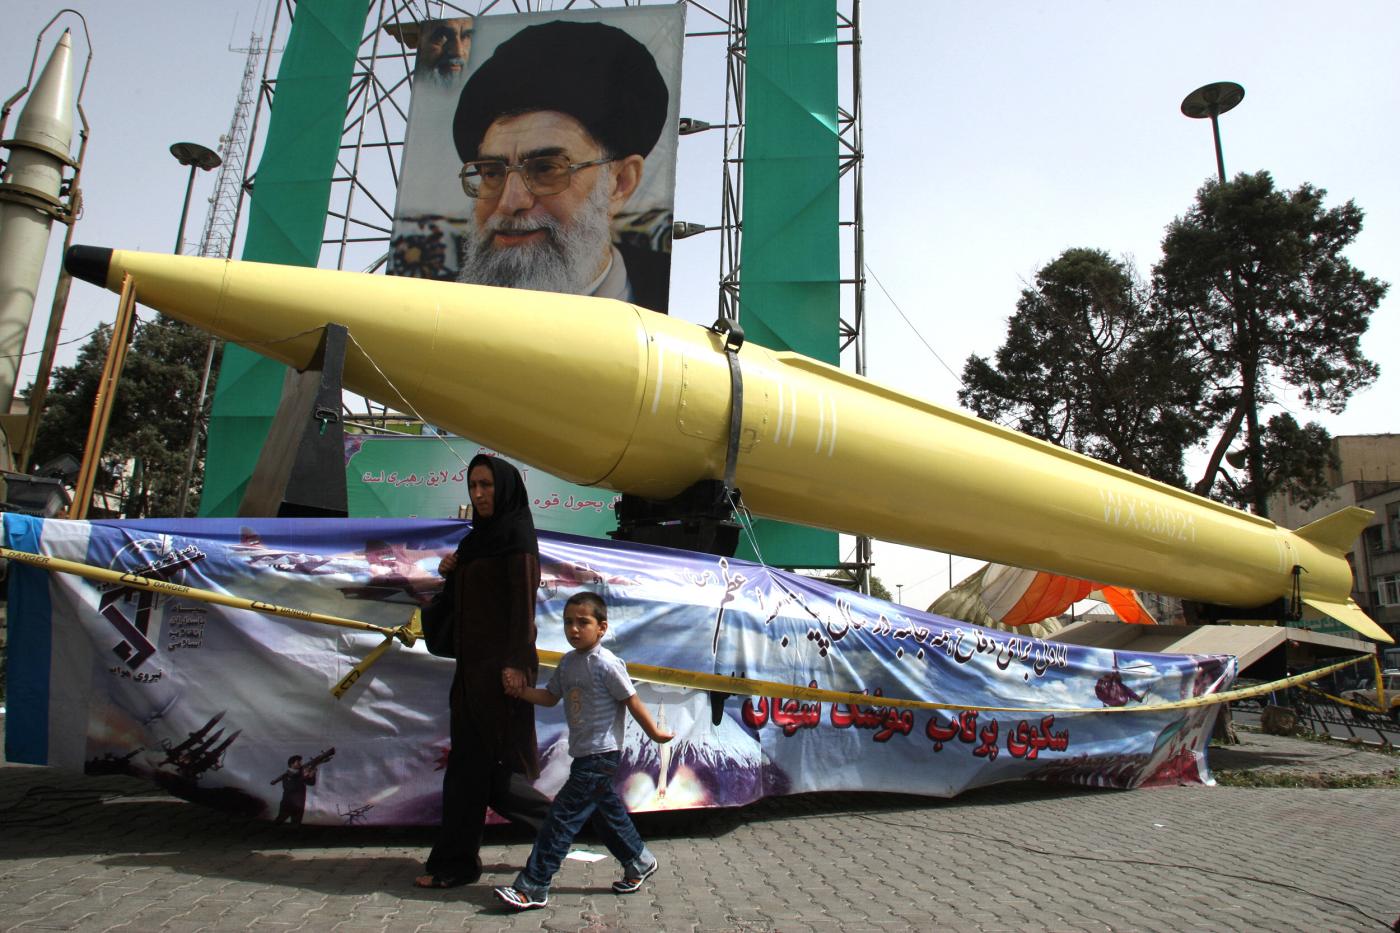 ΗΠΑ σε ΟΗΕ: Να γίνει επανεξέταση των πυρηνικών δραστηριοτήτων του Ιράν